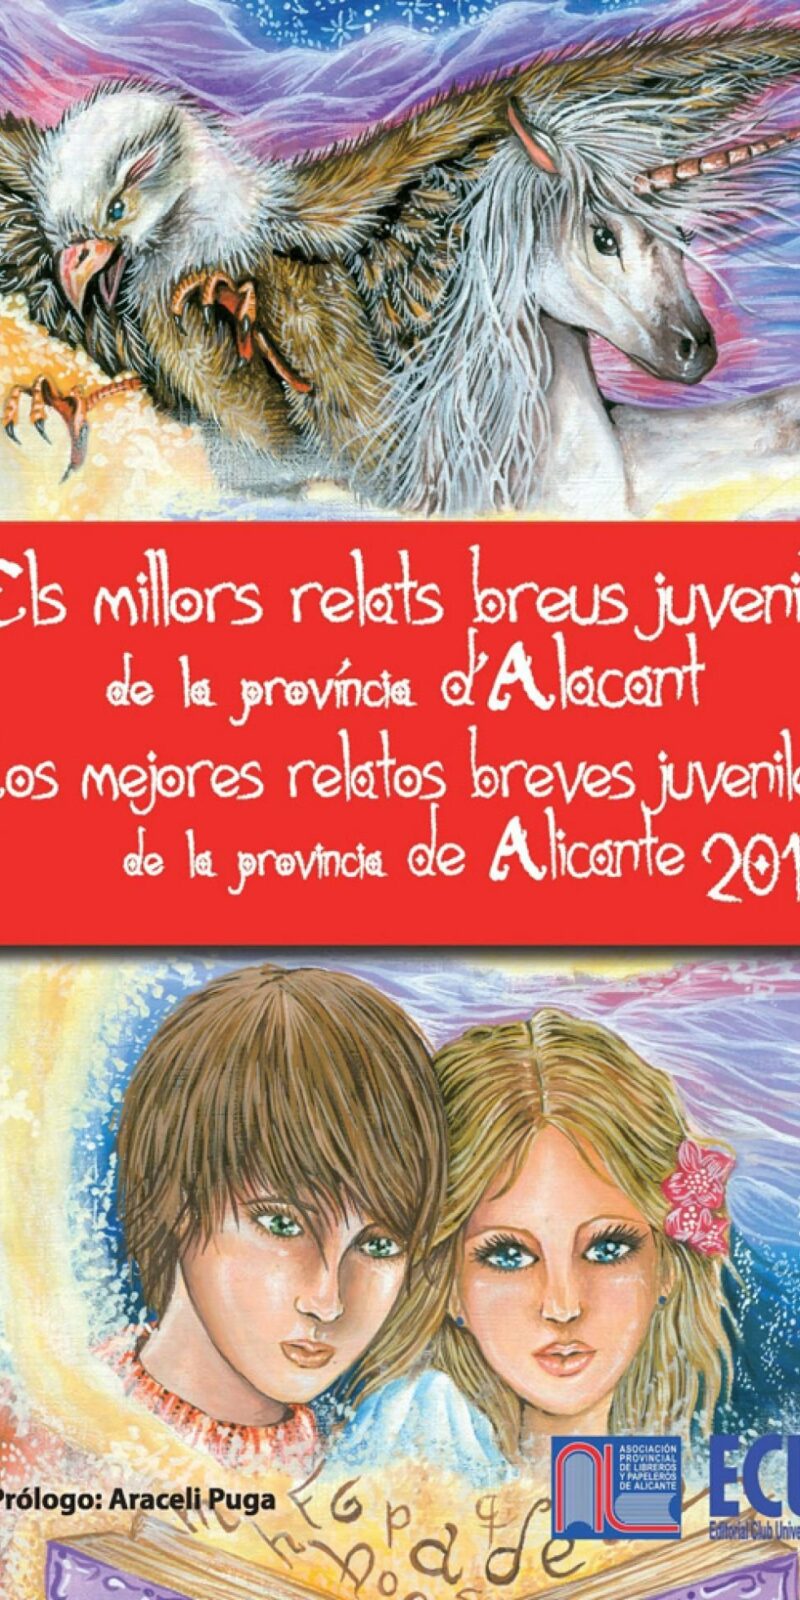 LOS MEJORES RELATOS BREVES JUVENILES DE LA PROVINCIA DE ALICANTE 2012